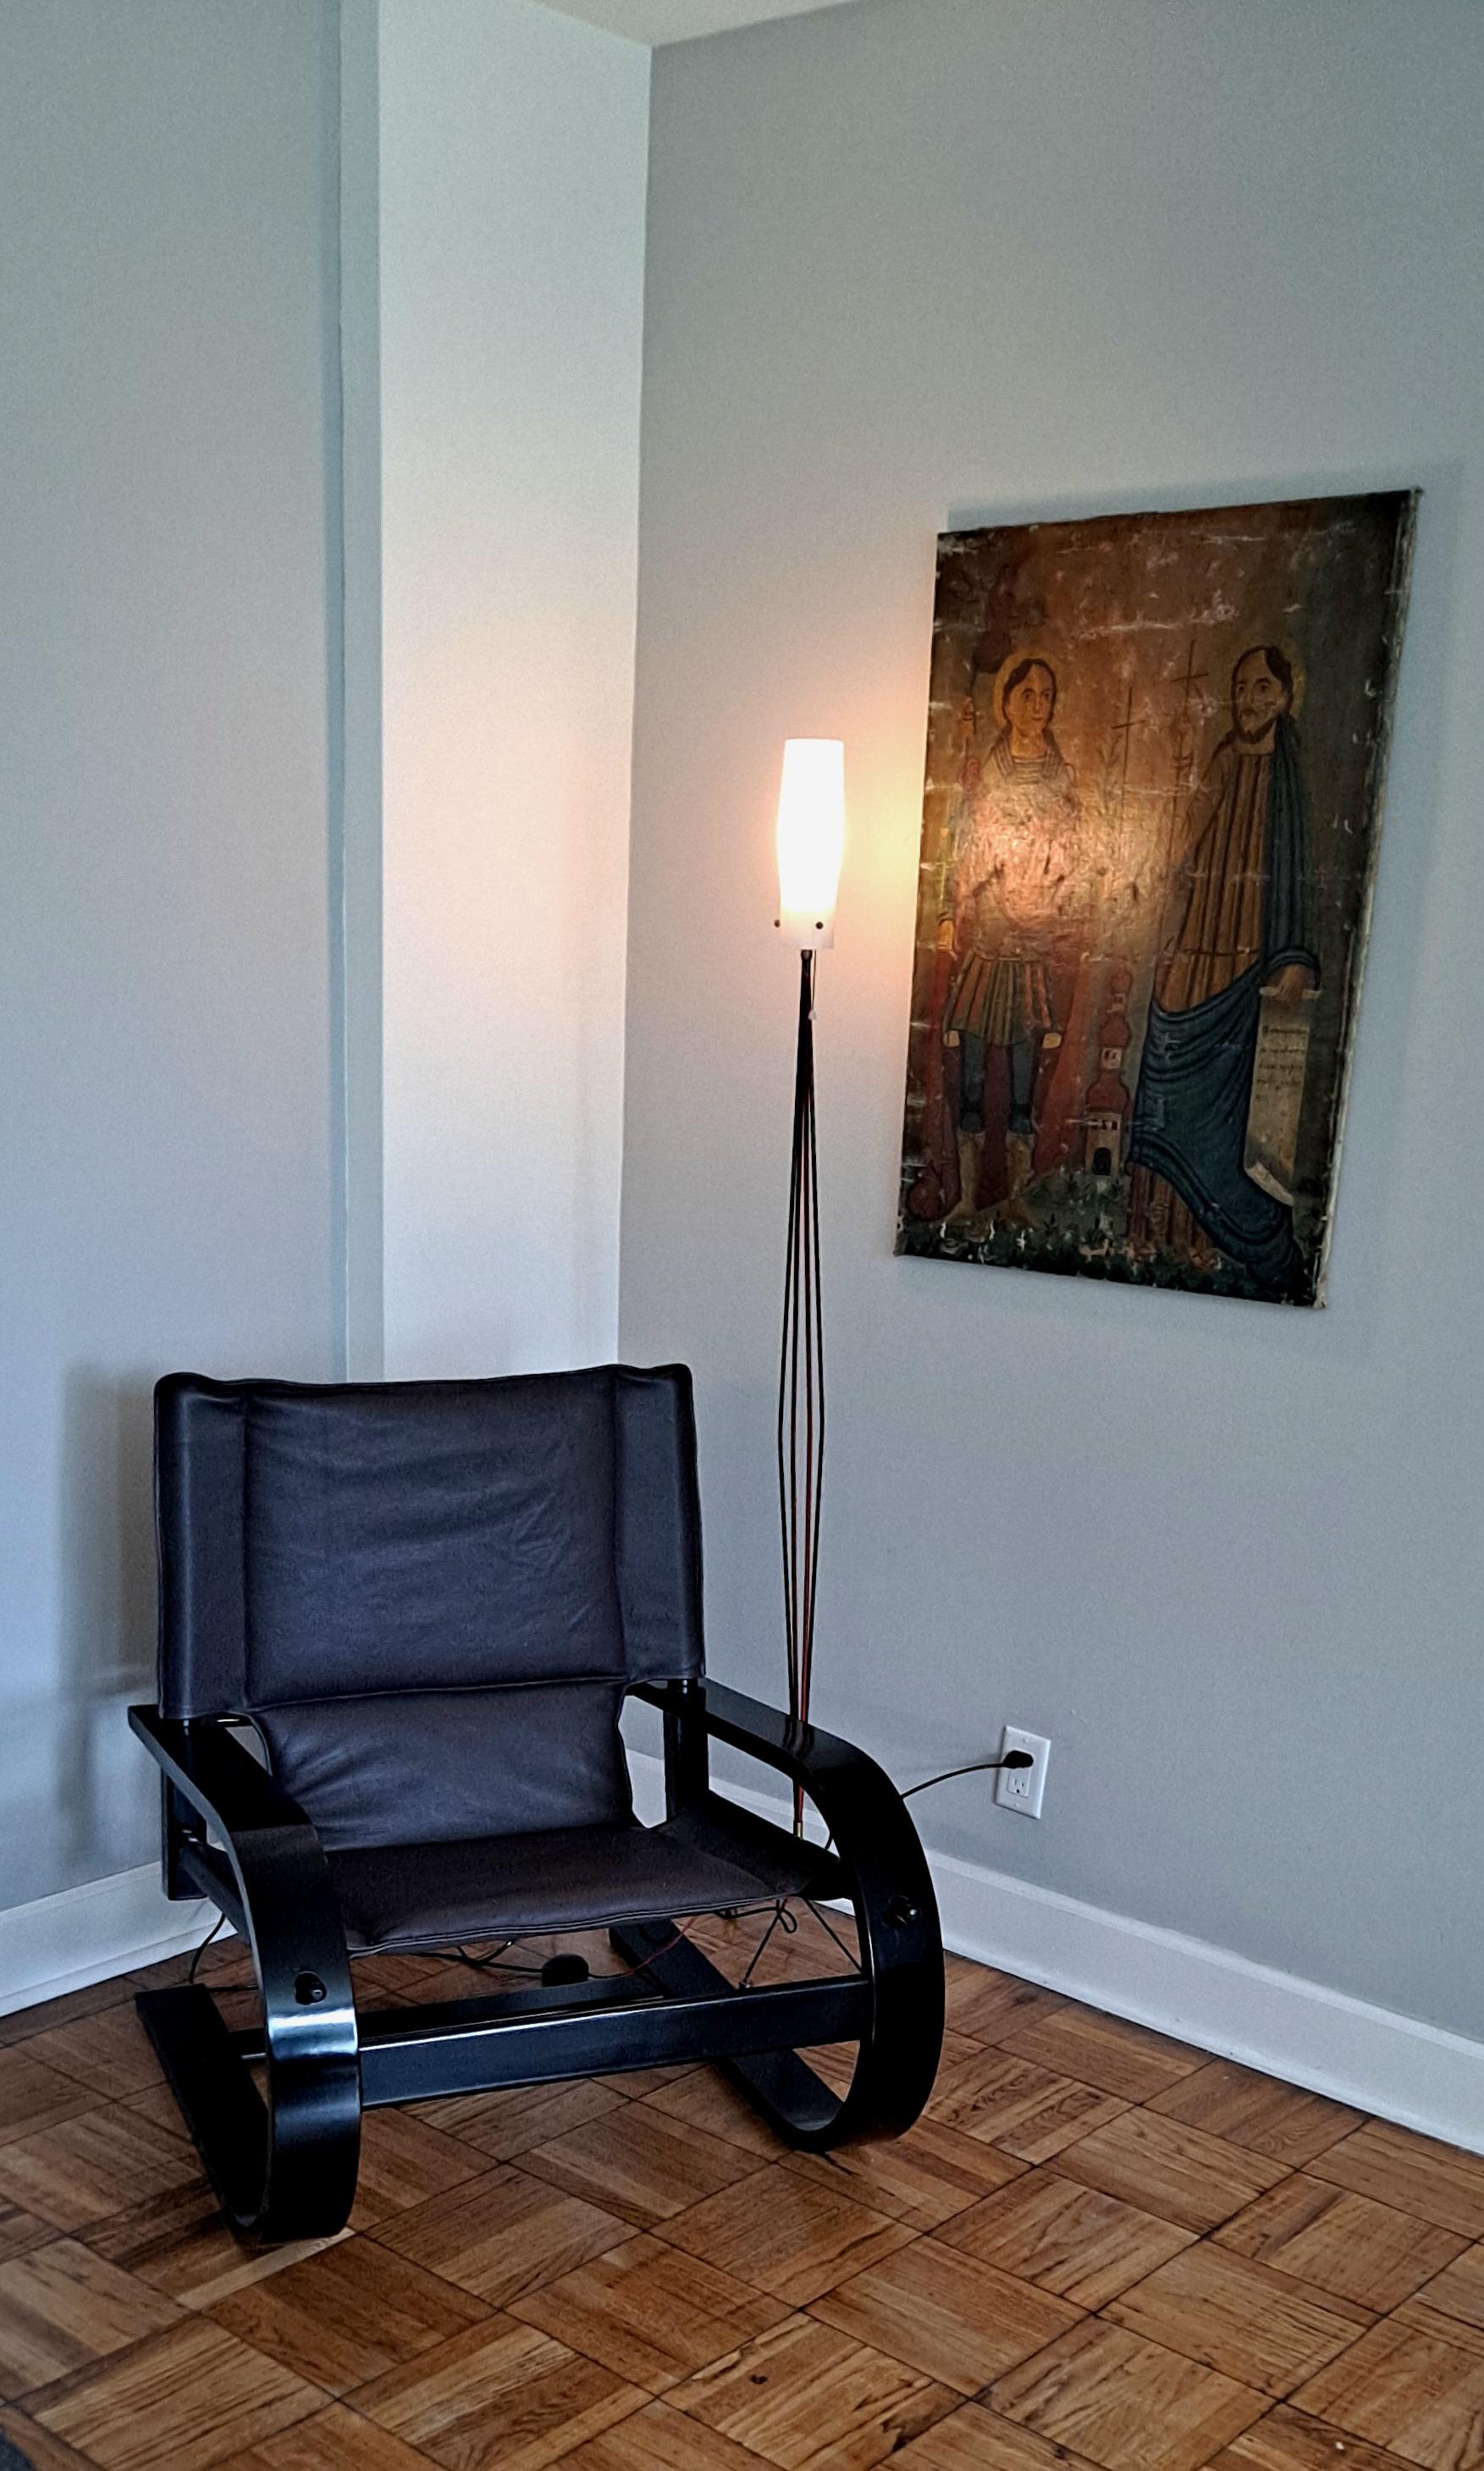 Stuhl von Poltronova, entworfen von De Pas D Urbino und Lomazzi  .
Dies ist restauriert Stuhl mit dem neuen Lederkissen und Ebenholz schwarzer Farbe auf dem Rahmen.Dieser Stuhl ist sehr komfortabel.
 Versand Kontinentale USA in Hauslieferung $450 